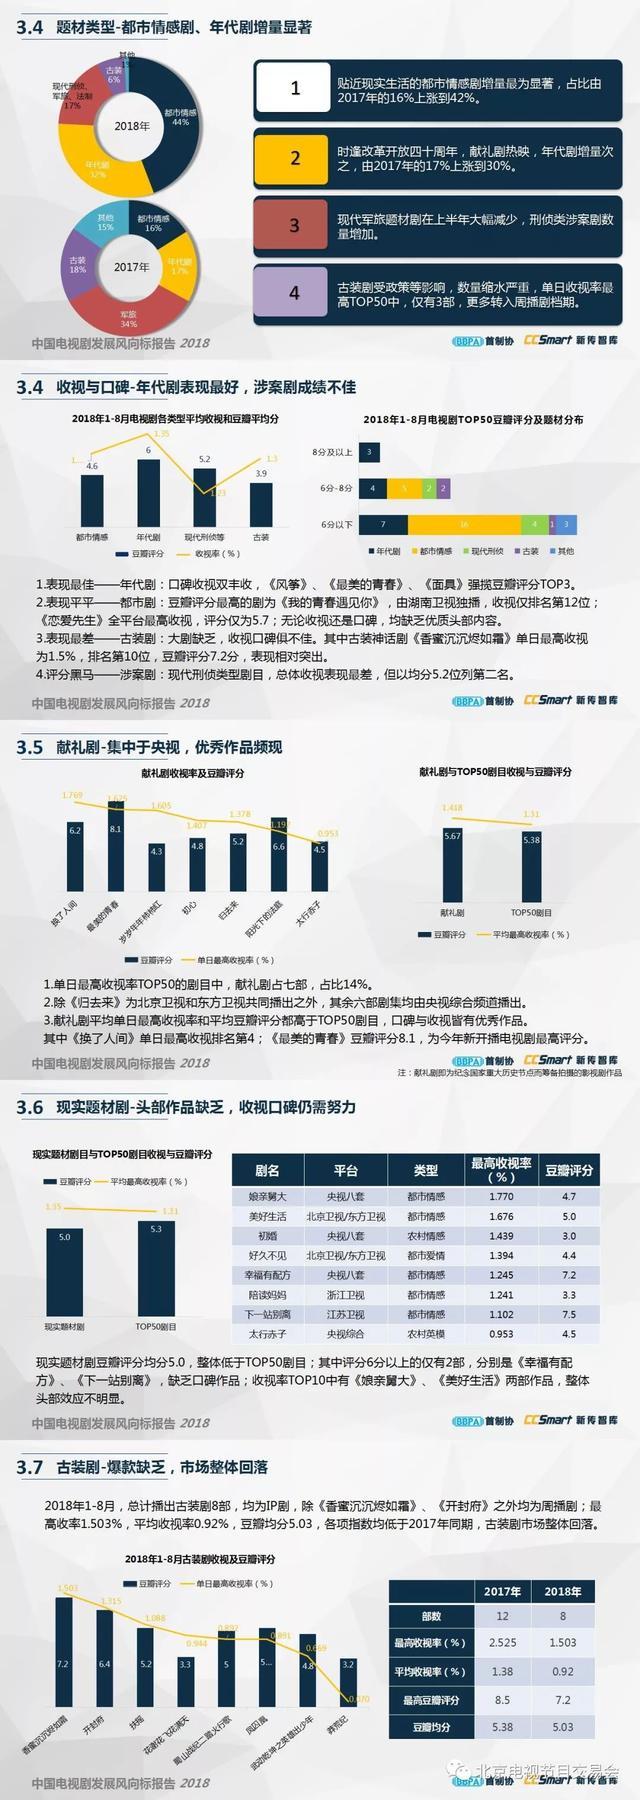 最新发布《中国电视剧风向标报告2018》(完整